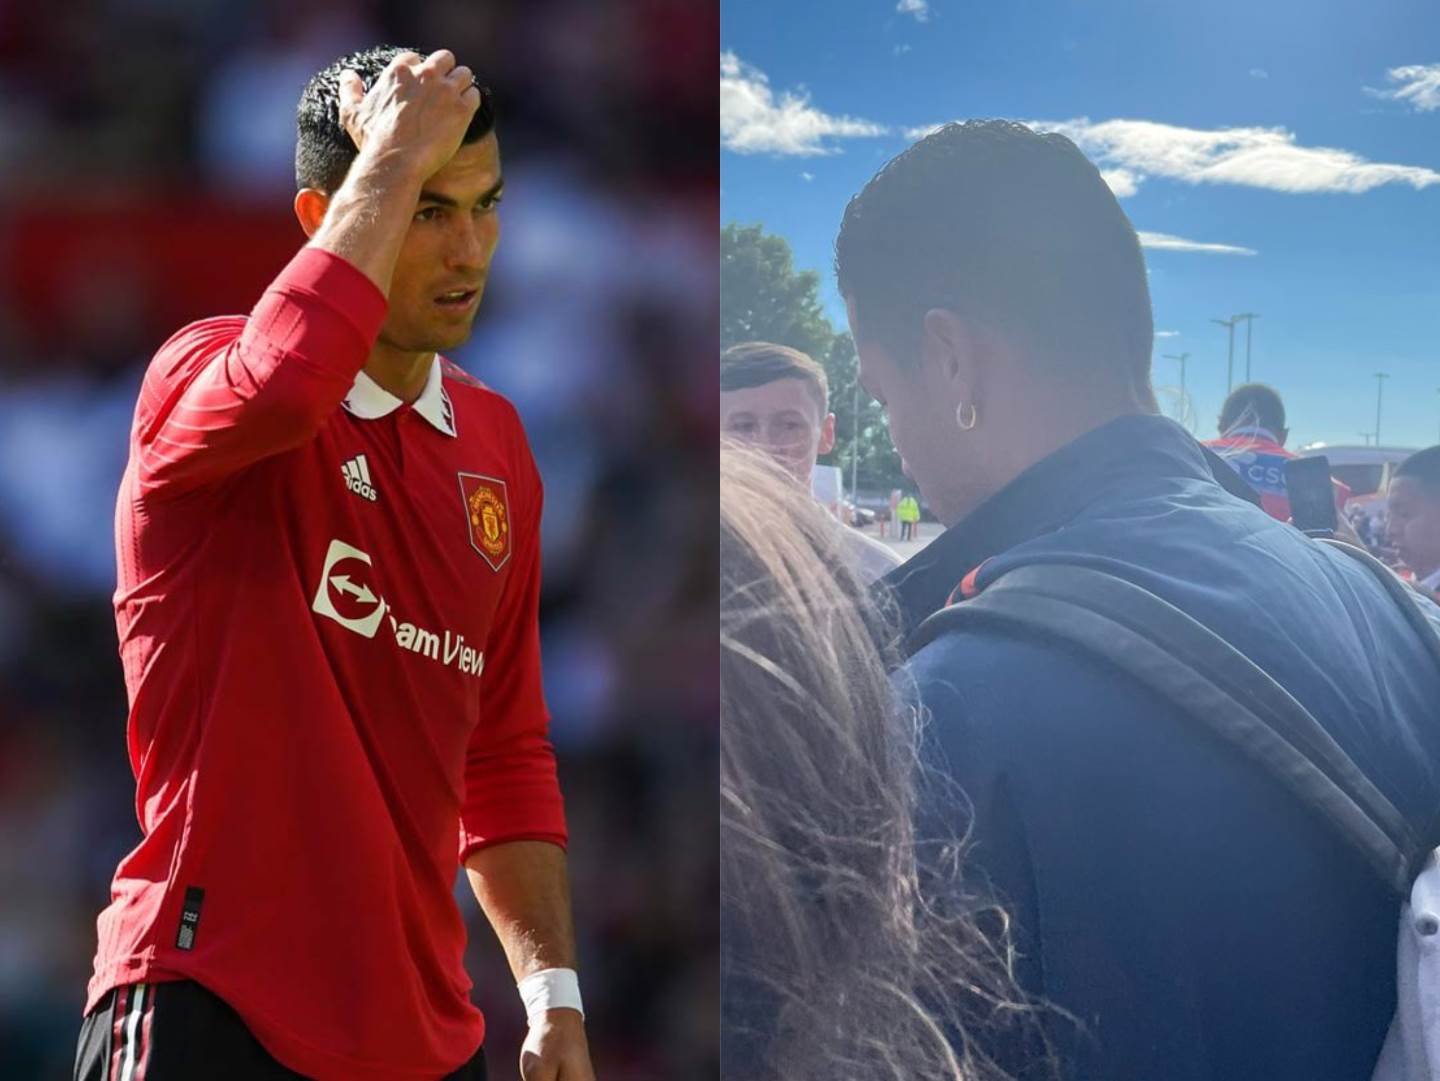  Kristijano-Ronaldo-otisao-sa-Junajtedove-utakmice 